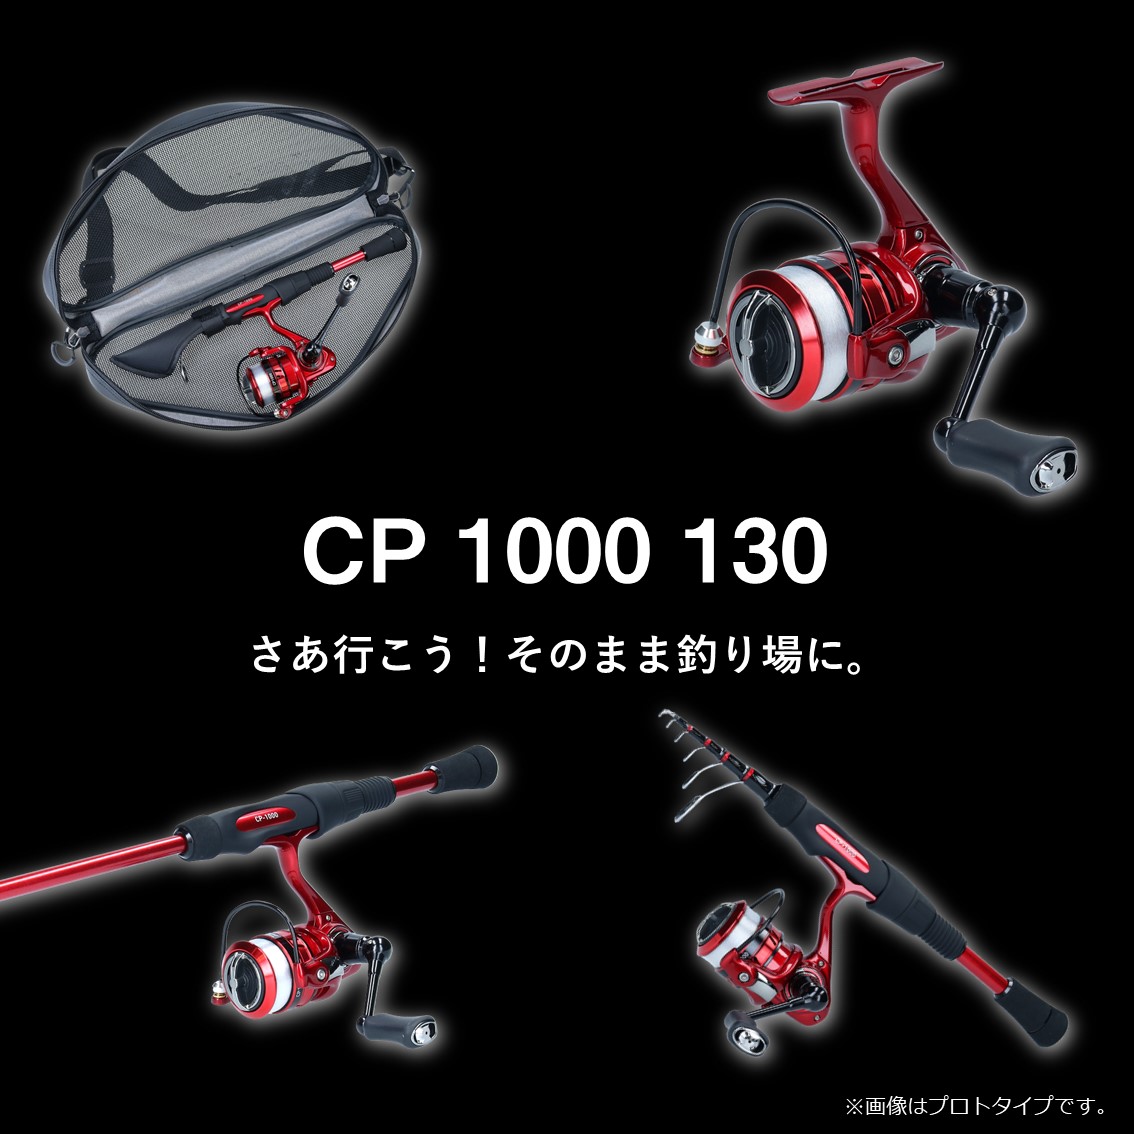 ダイワ CP 1000 130 (釣り竿 セット コンパクトロッド) - 釣り具の販売 